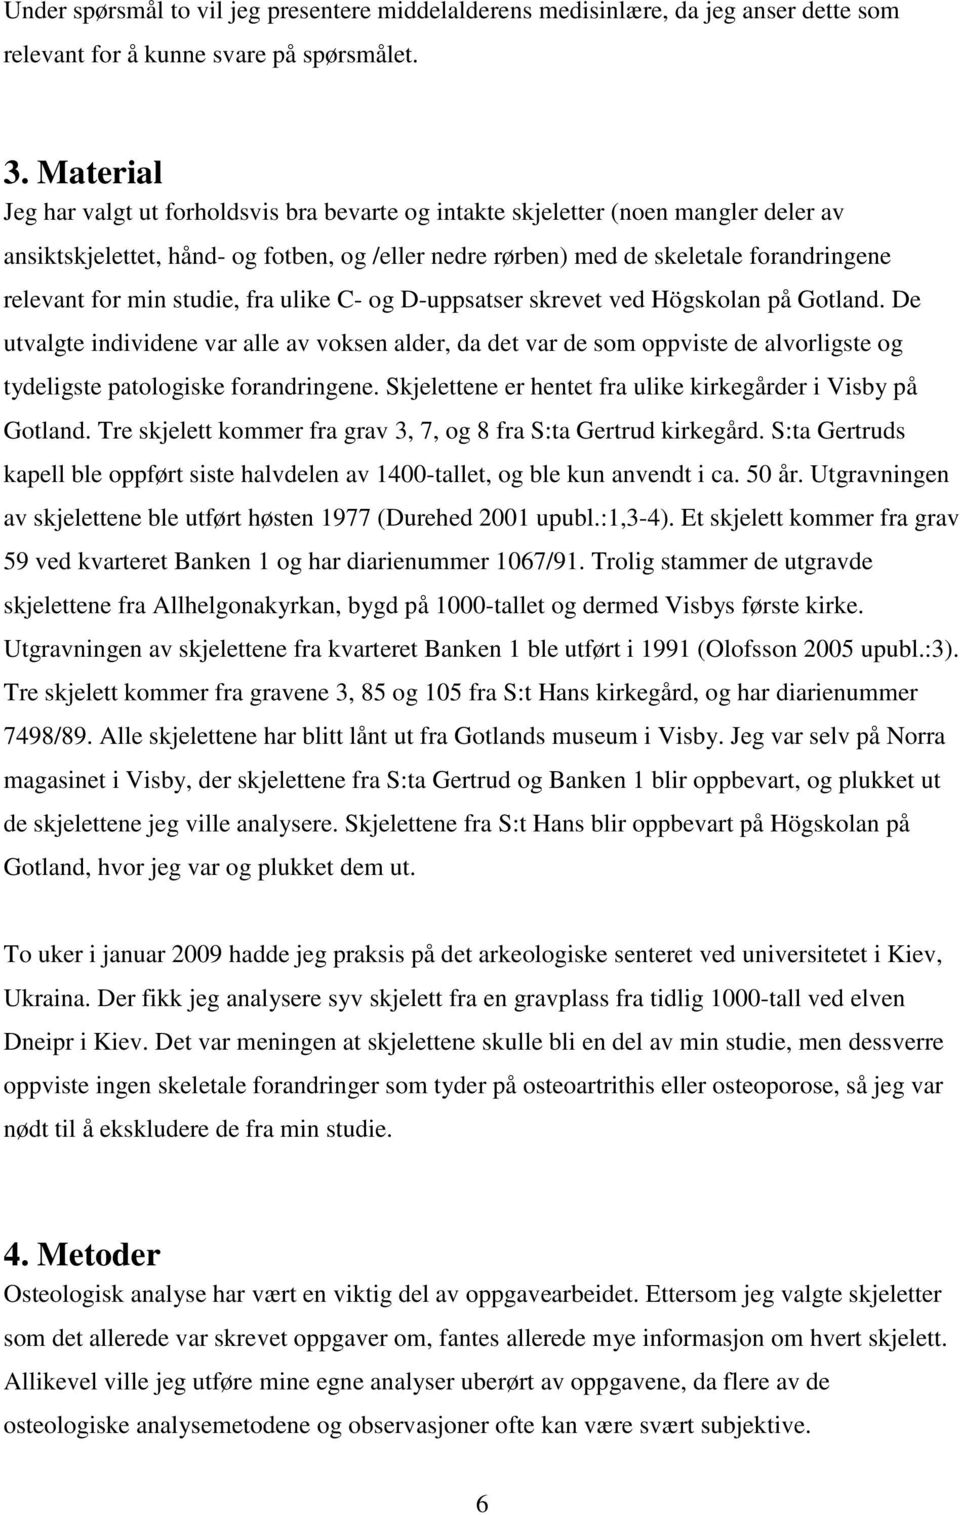 min studie, fra ulike C- og D-uppsatser skrevet ved Högskolan på Gotland.